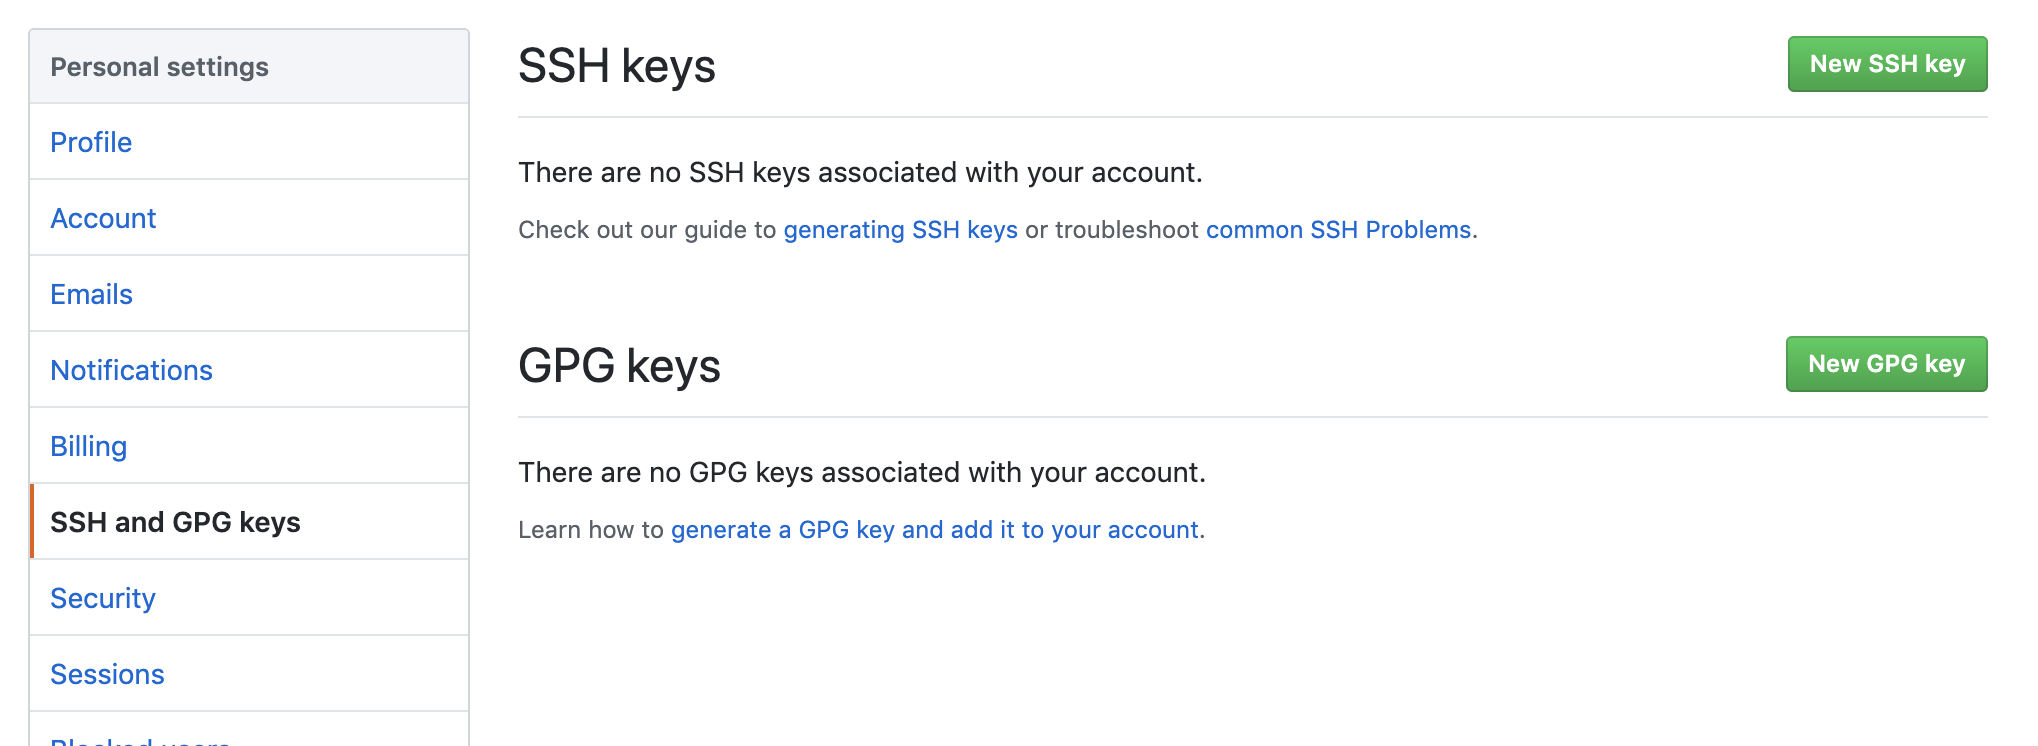 New SSH key